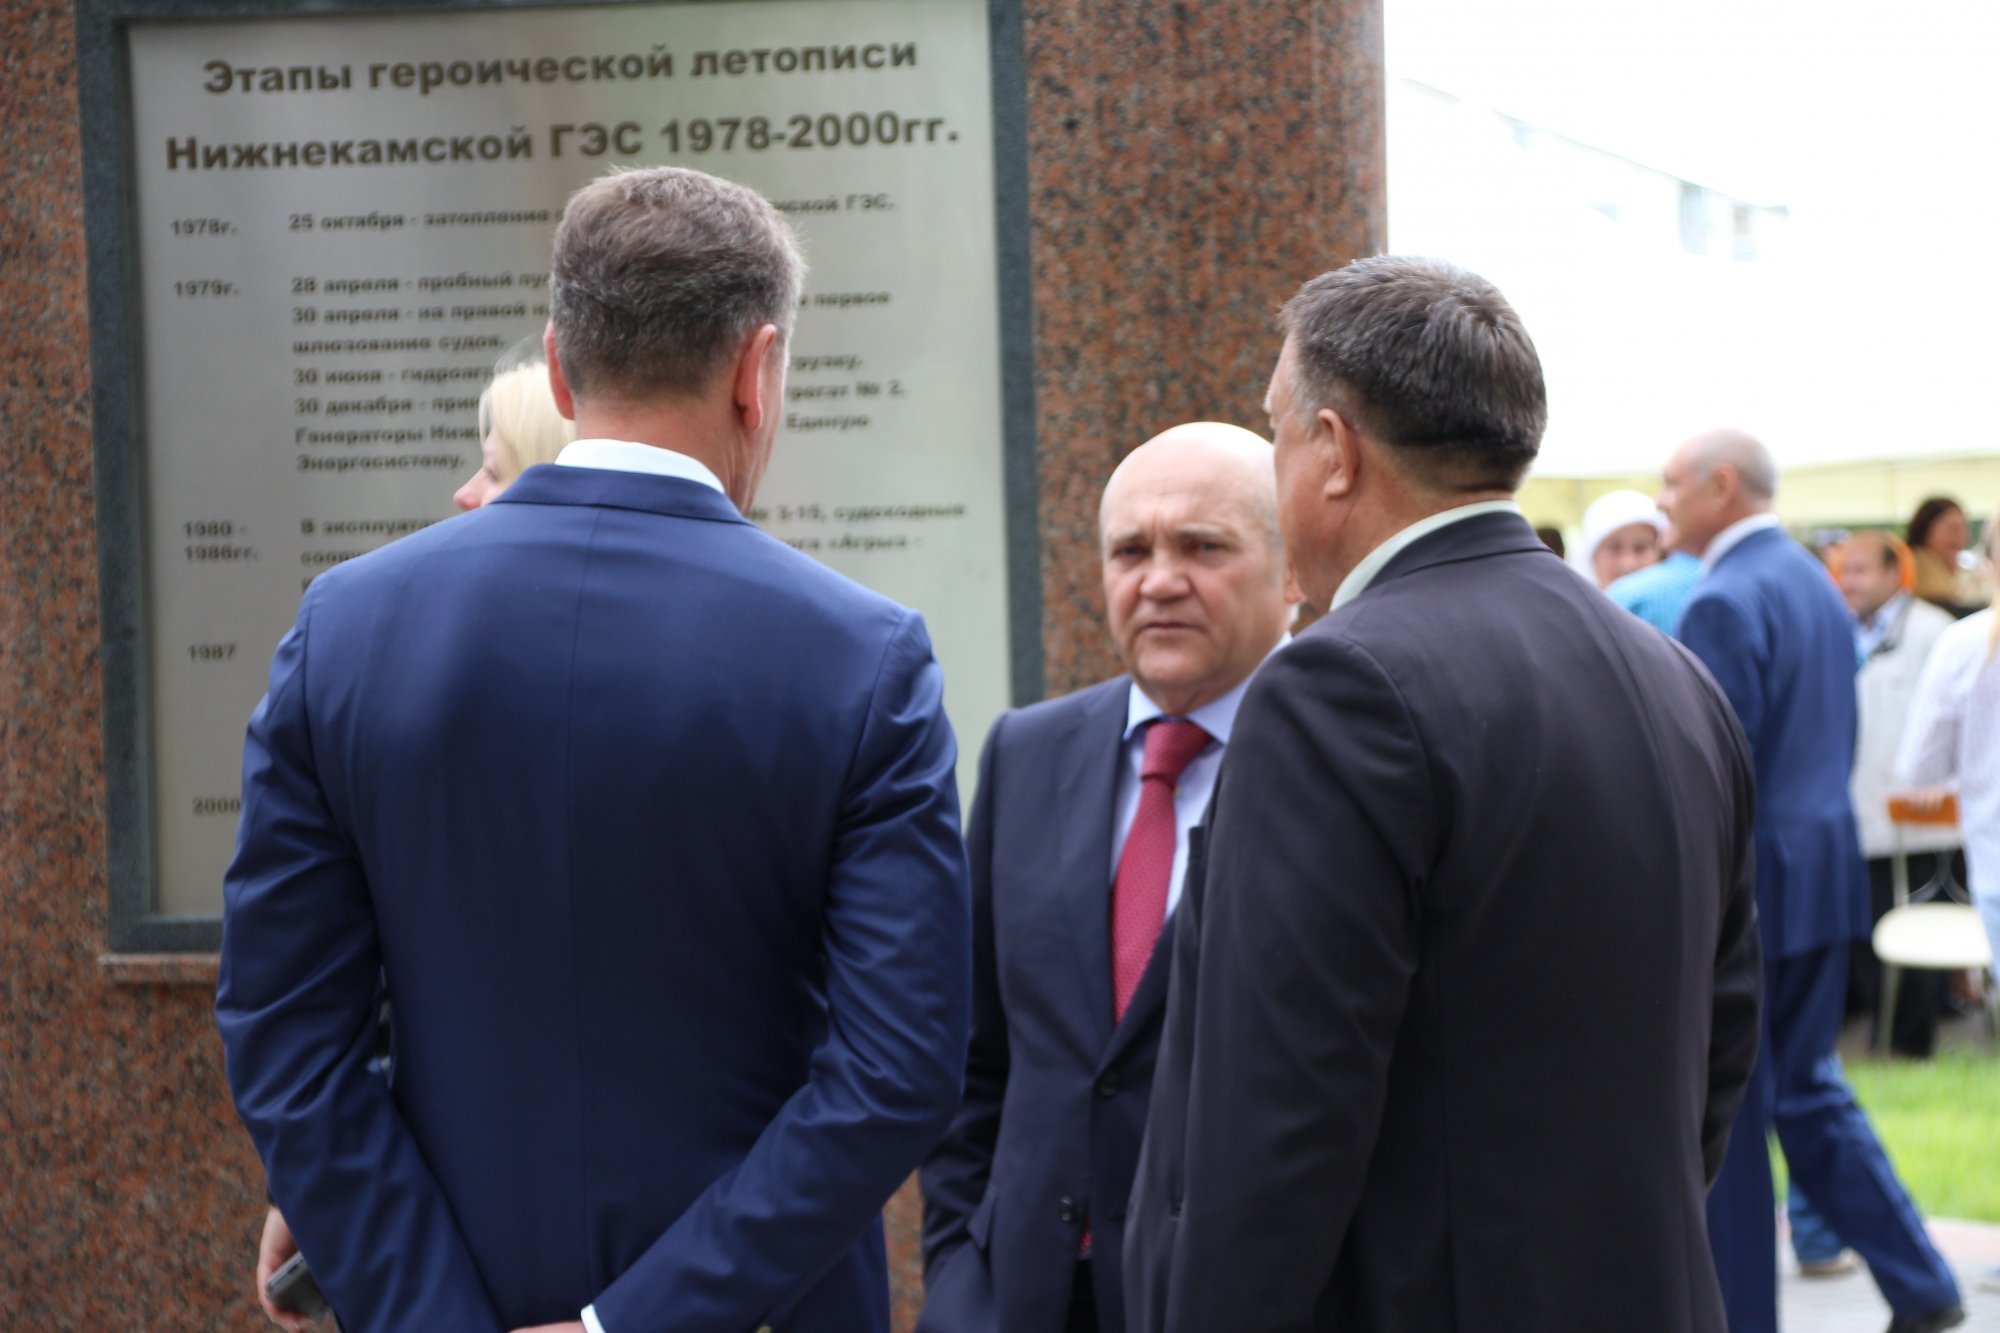 Рустам Минниханов открыл стелу строителям Нижнекамской ГЭС (фото)